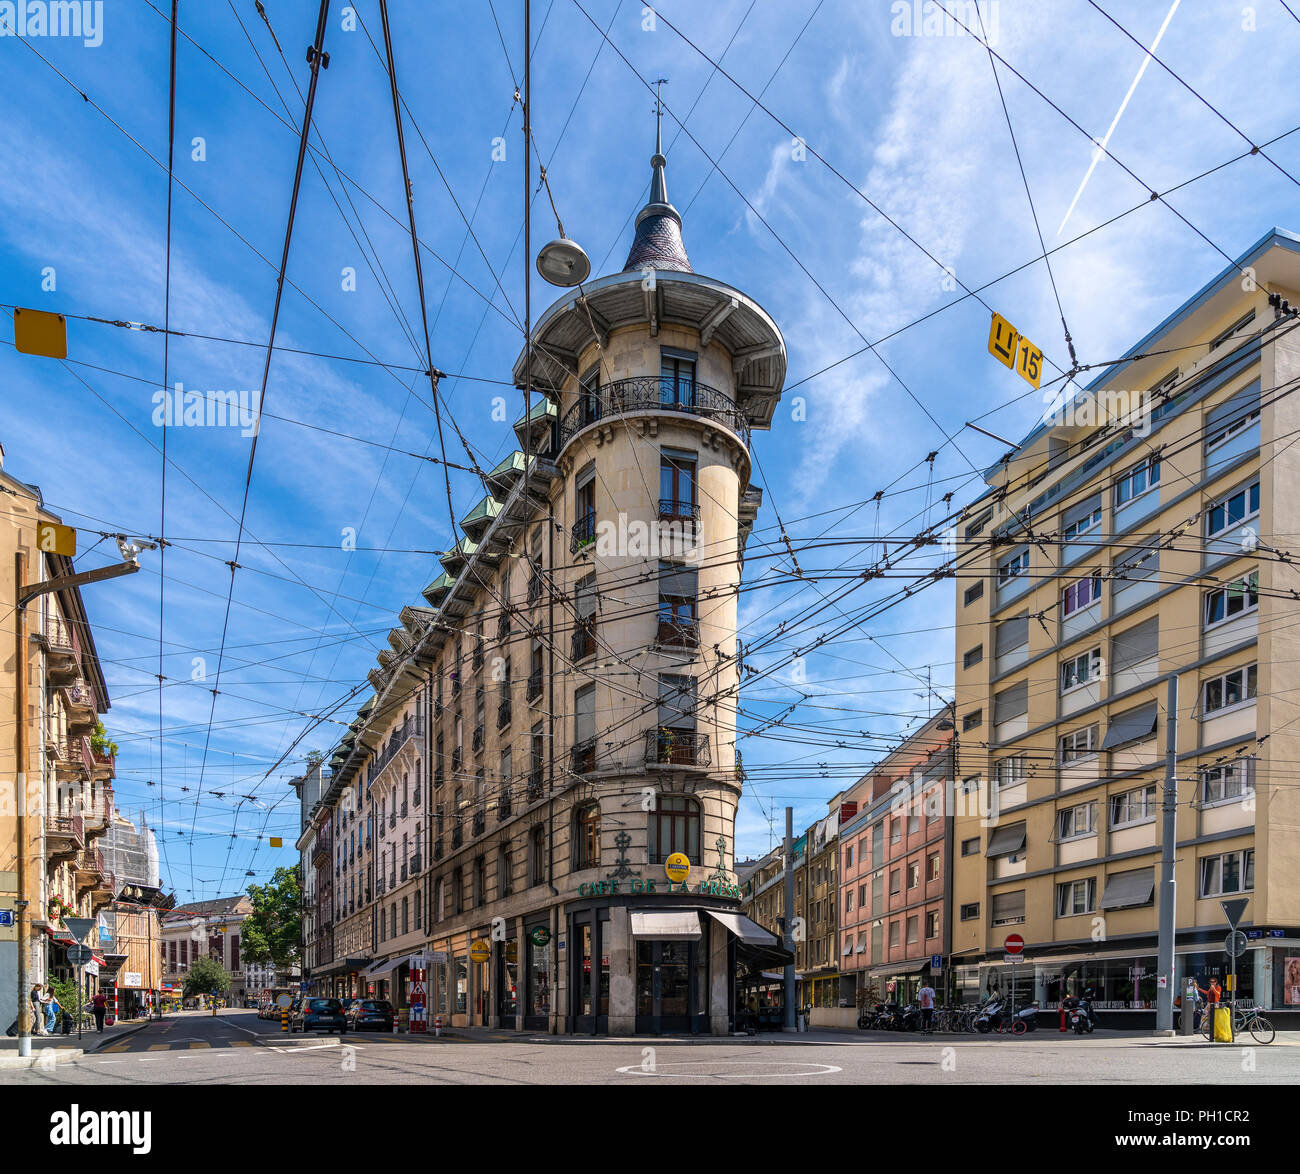 26 août 2018 - Genève, Suisse.Le réseau de tramway de Genève et belle architecture maisons et ciel bleu en arrière-plan Banque D'Images